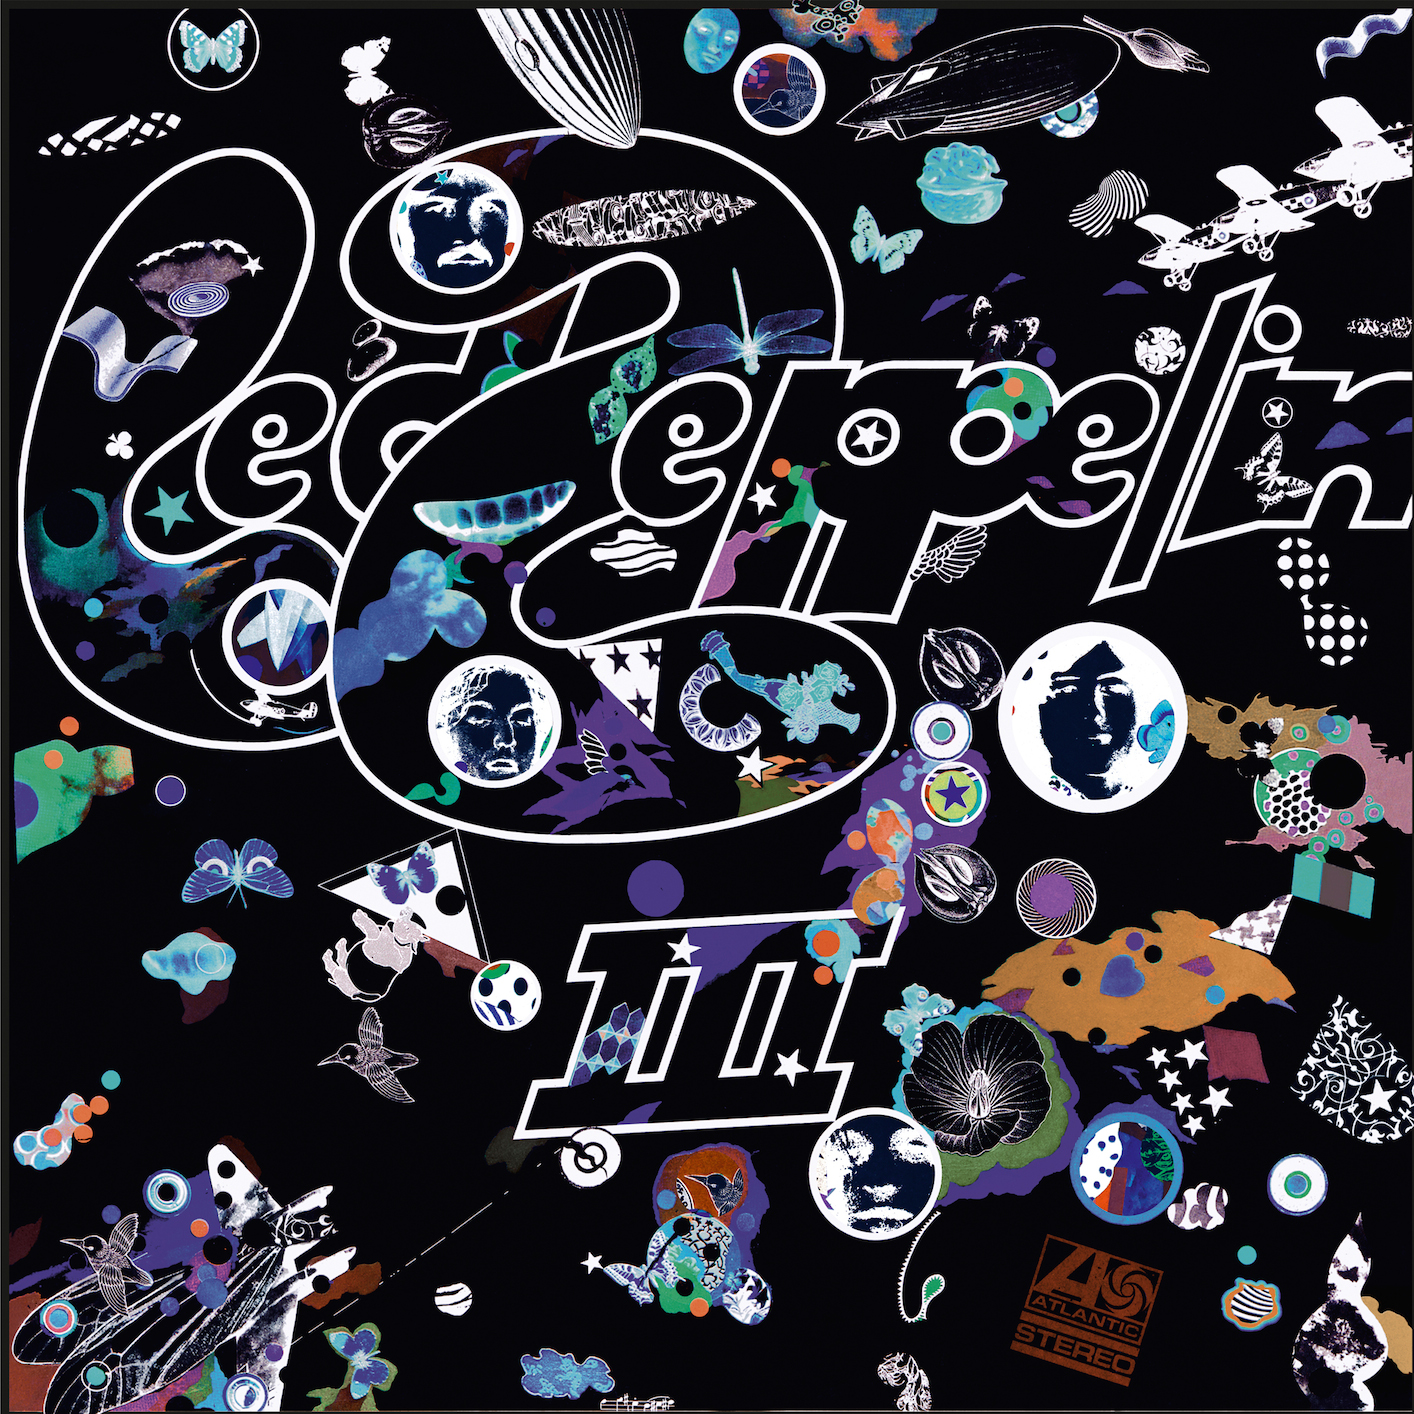 Led Zeppelin - 1970 - Led Zeppelin III Deluxe Edition [2014] 24-96